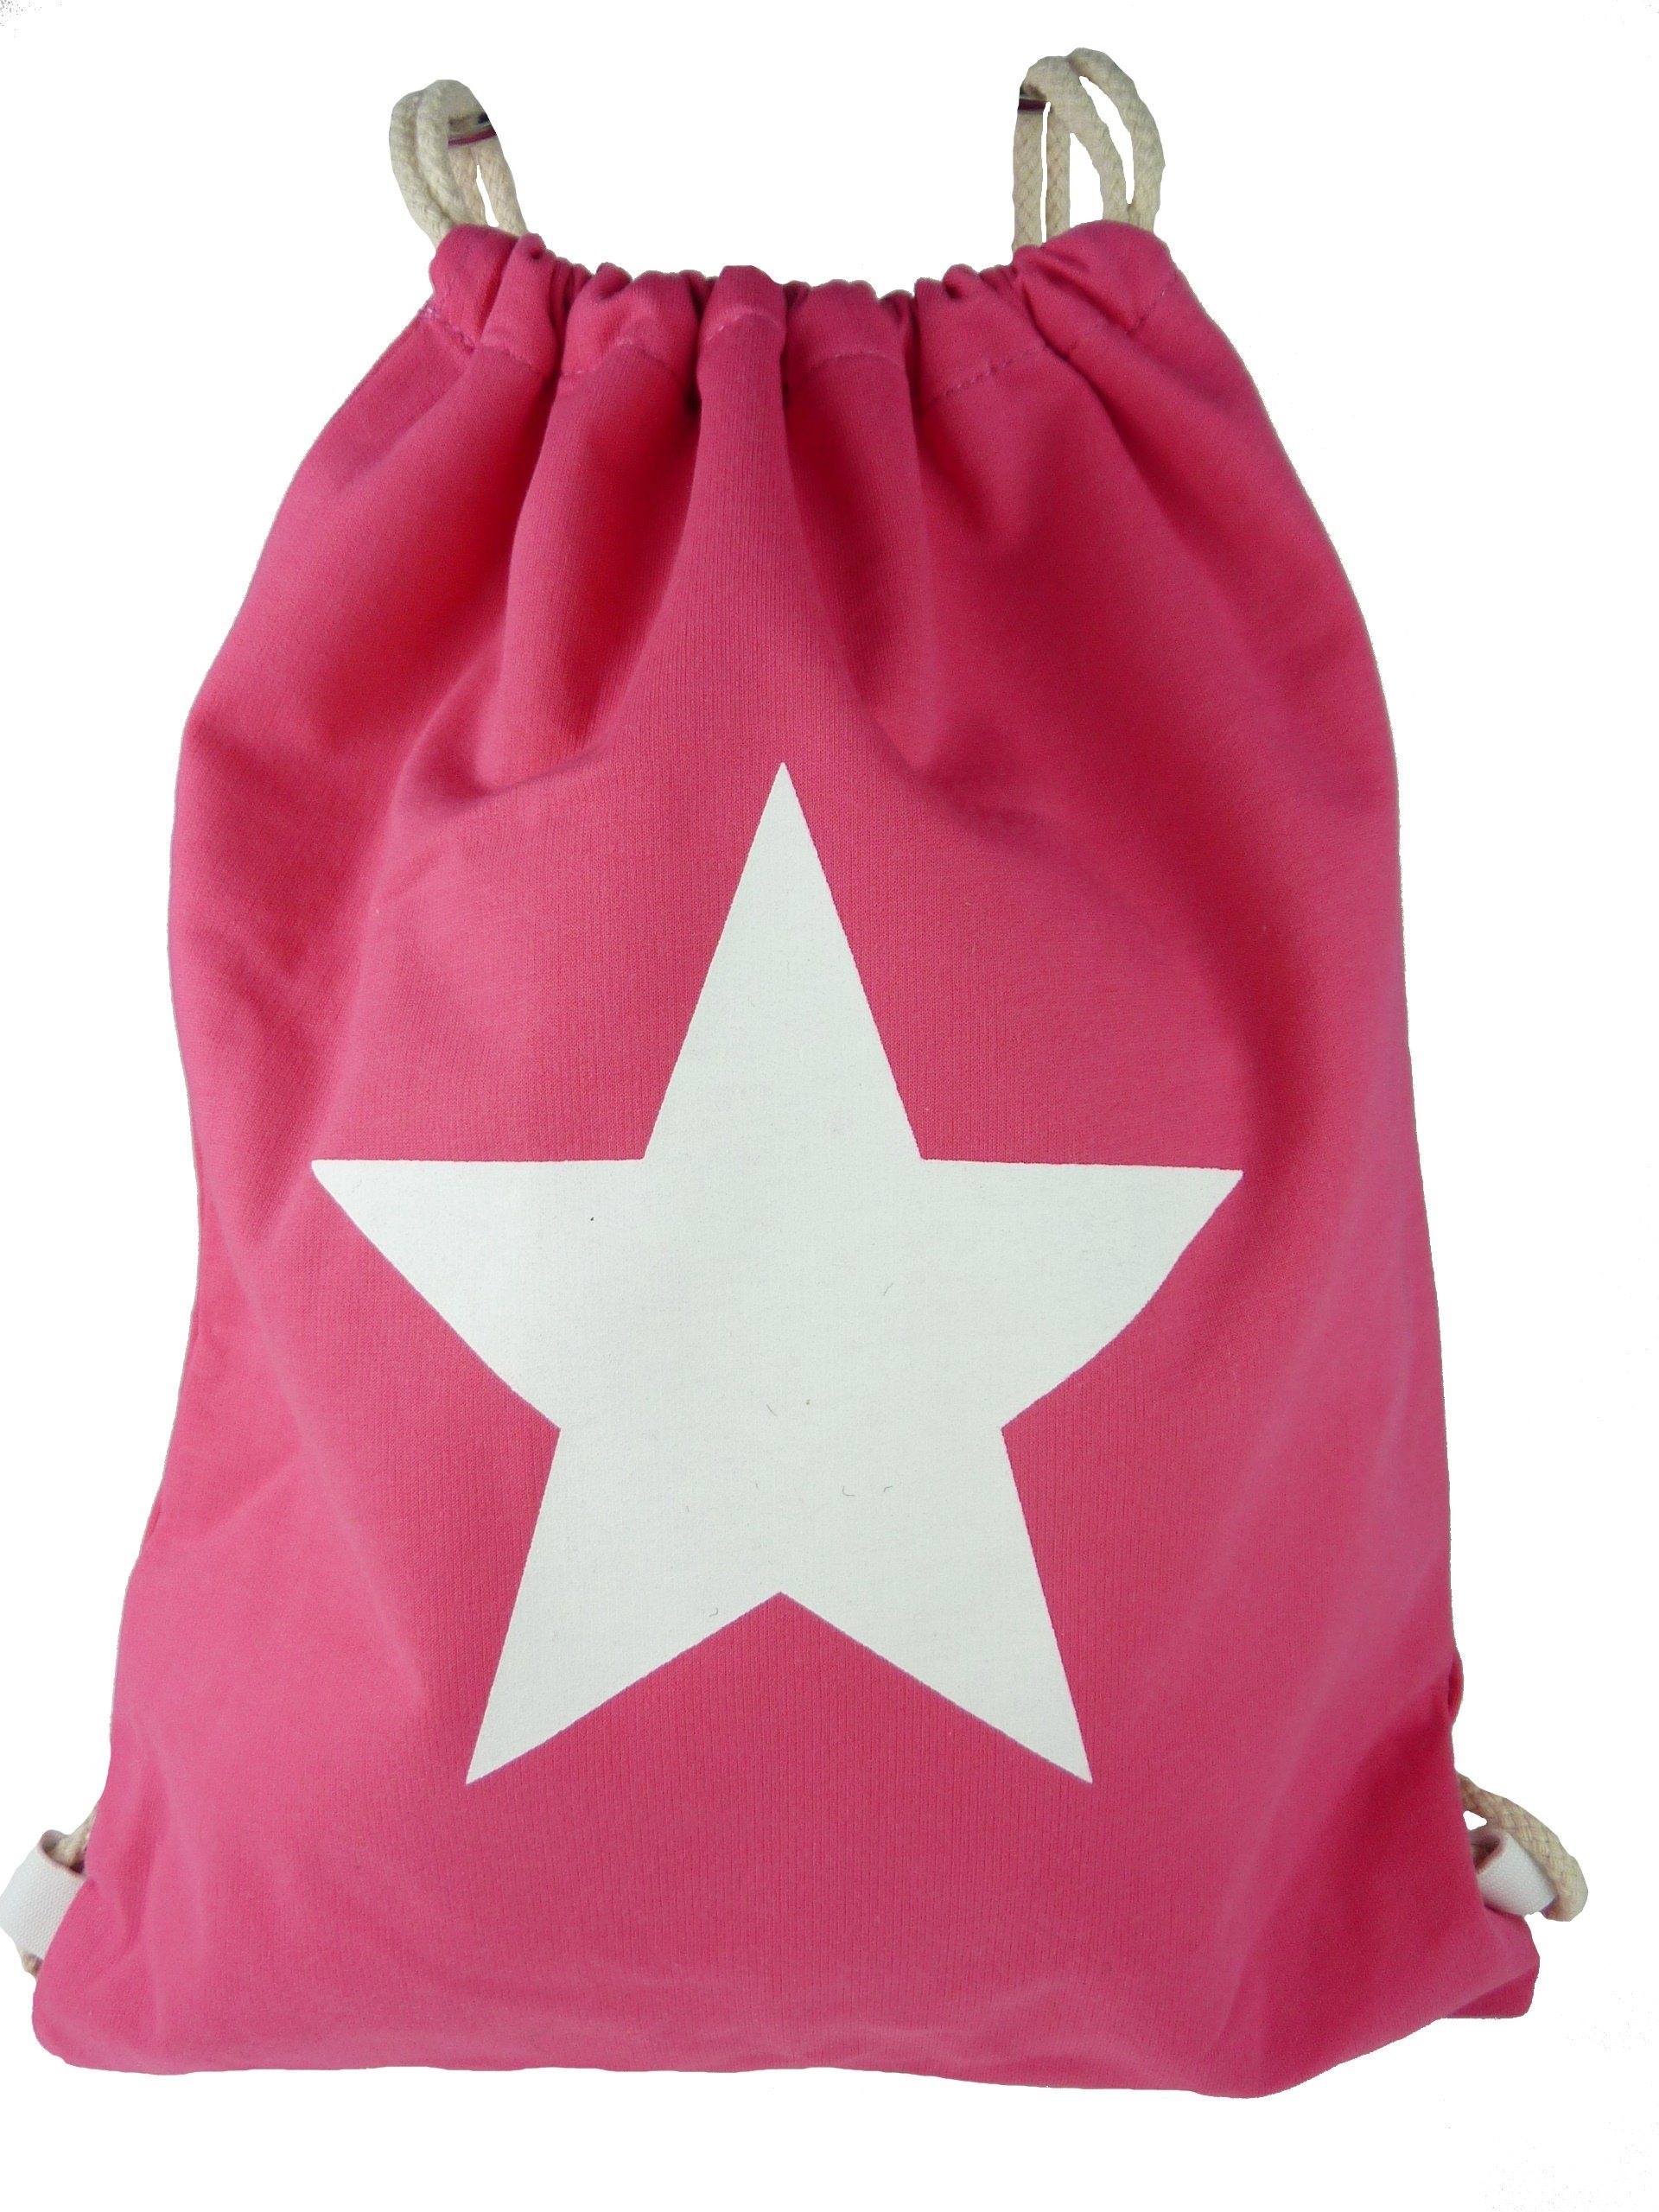 Taschen4life Gymbag Turnbeutel Rucksack 1605, mit großem Stern, Jute Beutel, sling bag, Sportbeutel pink